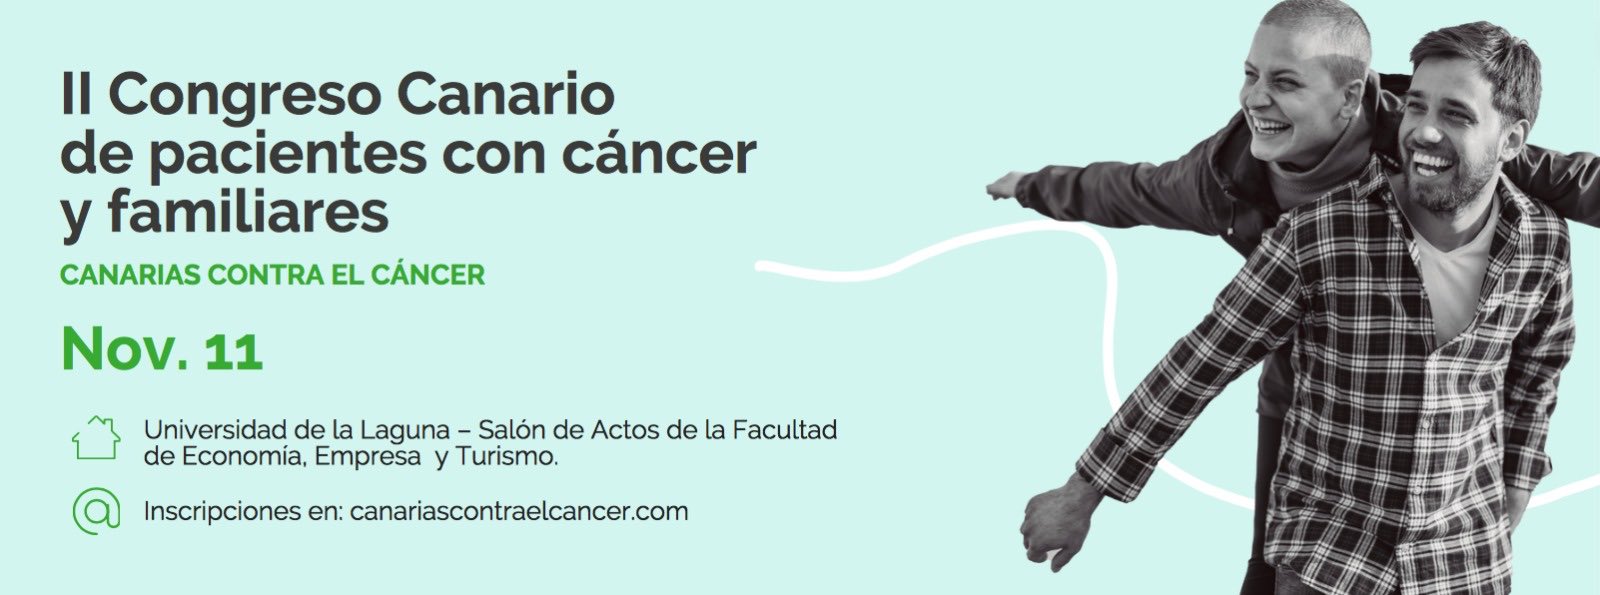 El Cabildo anima a participar en el II Congreso de pacientes con cáncer y familiares de Canarias